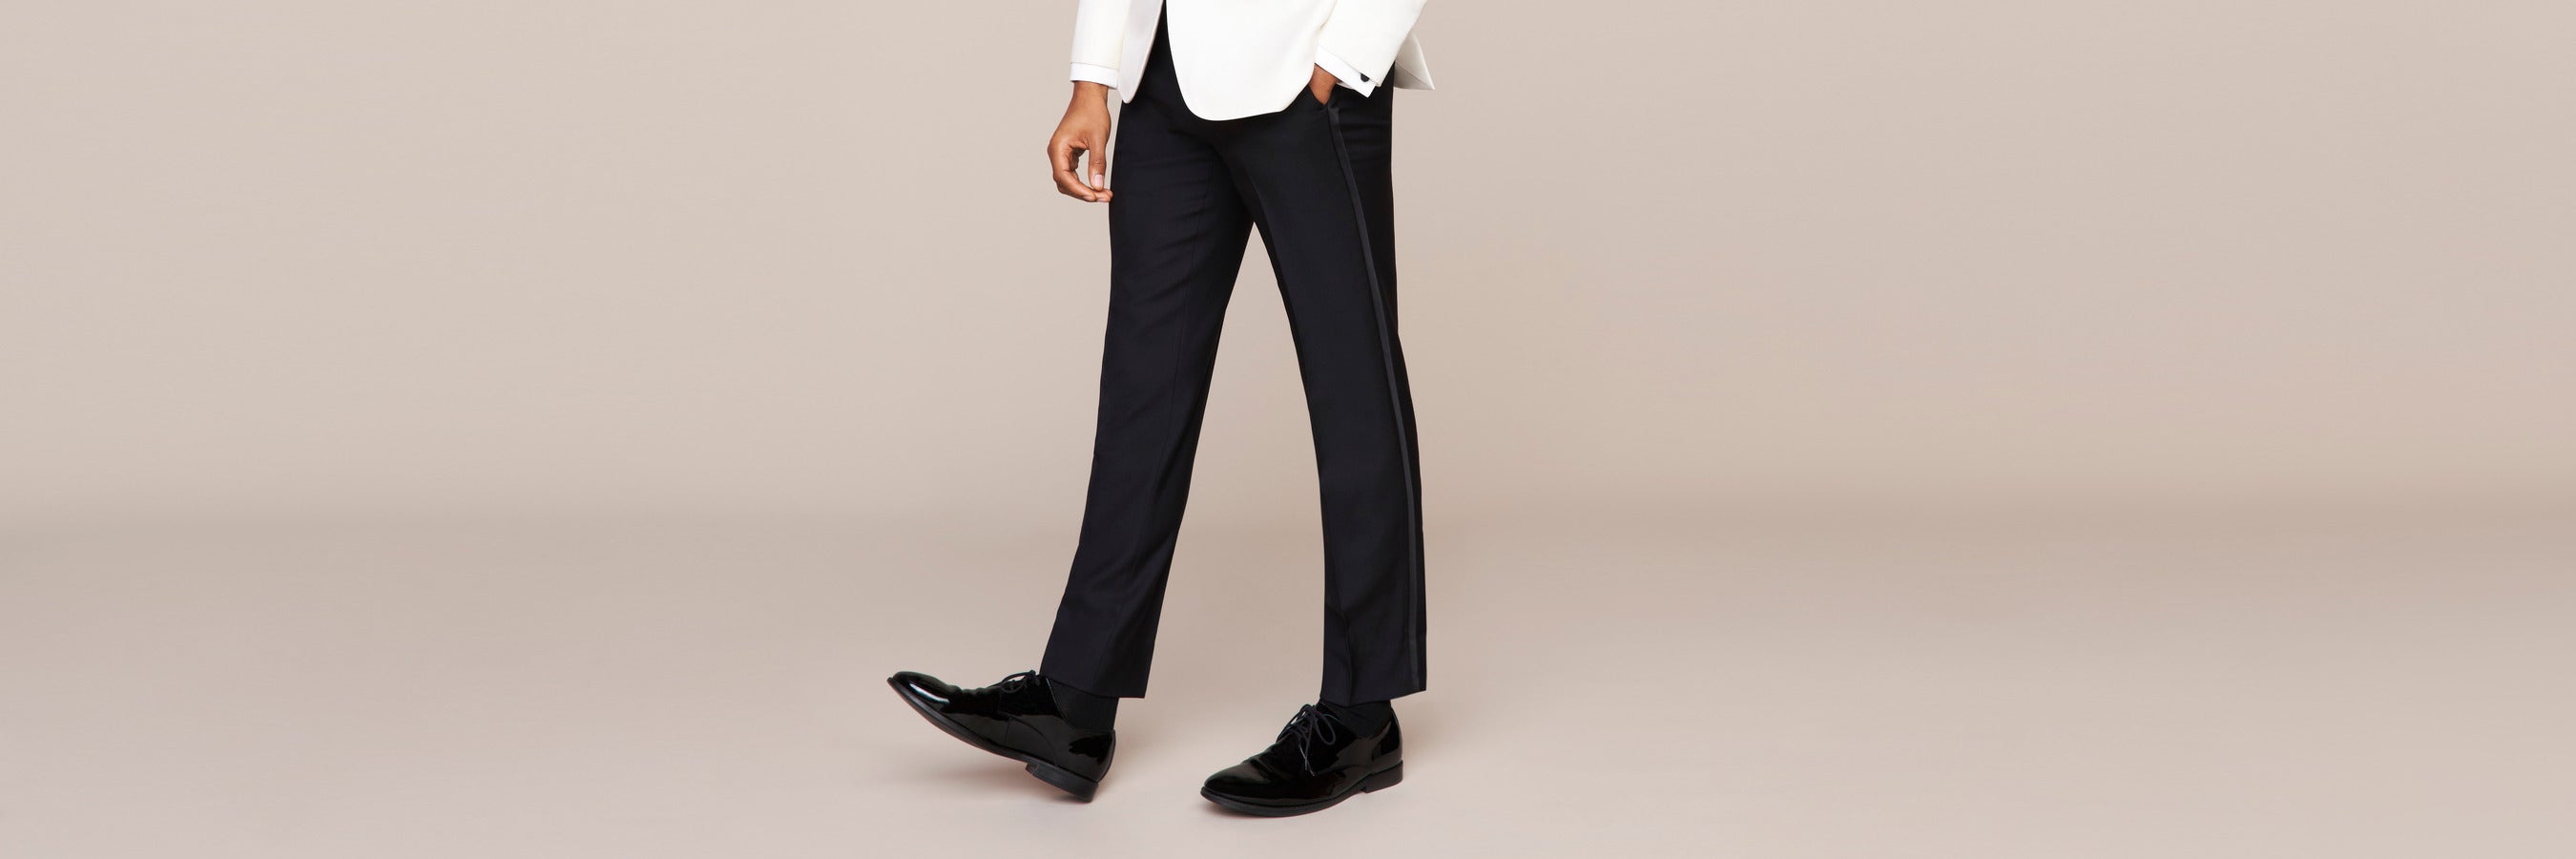 Suit & Tuxedo Pants – The Black Tux - Buy New